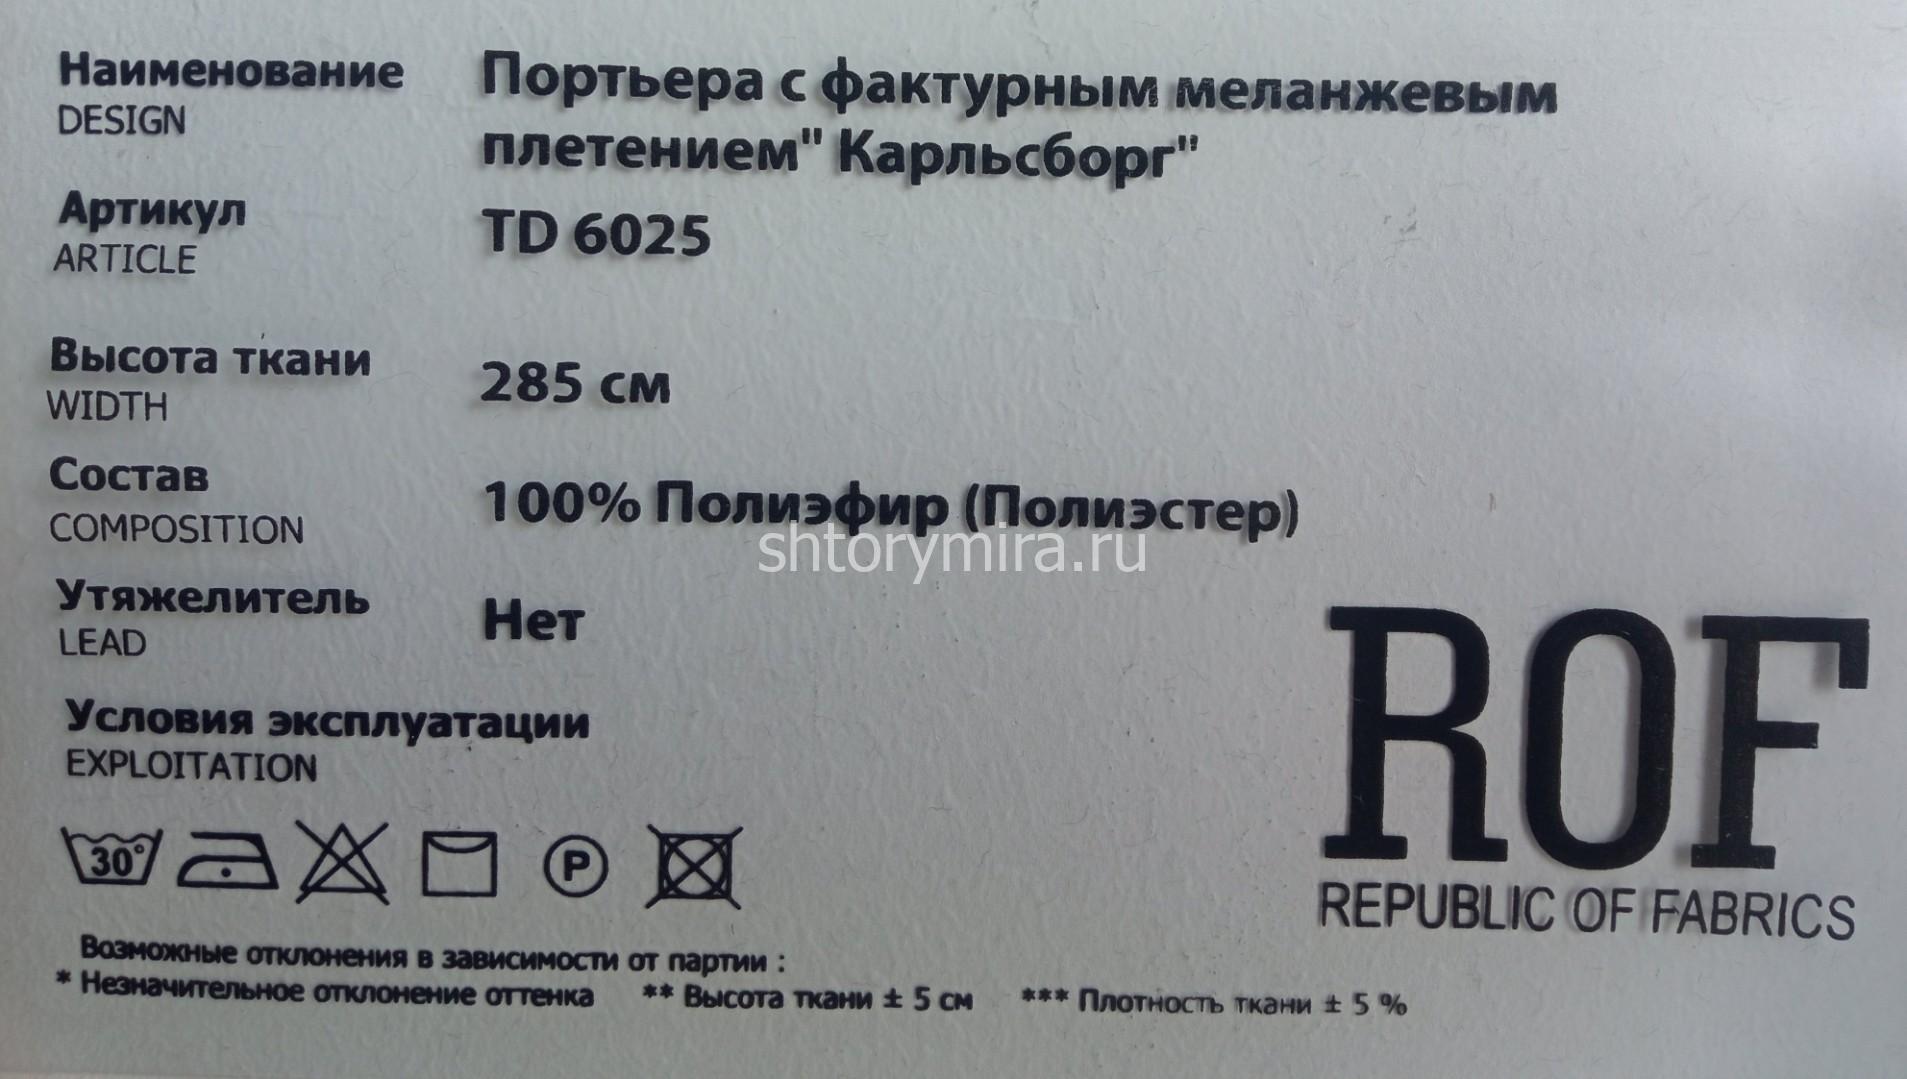 Ткань TD 6025-104 Rof